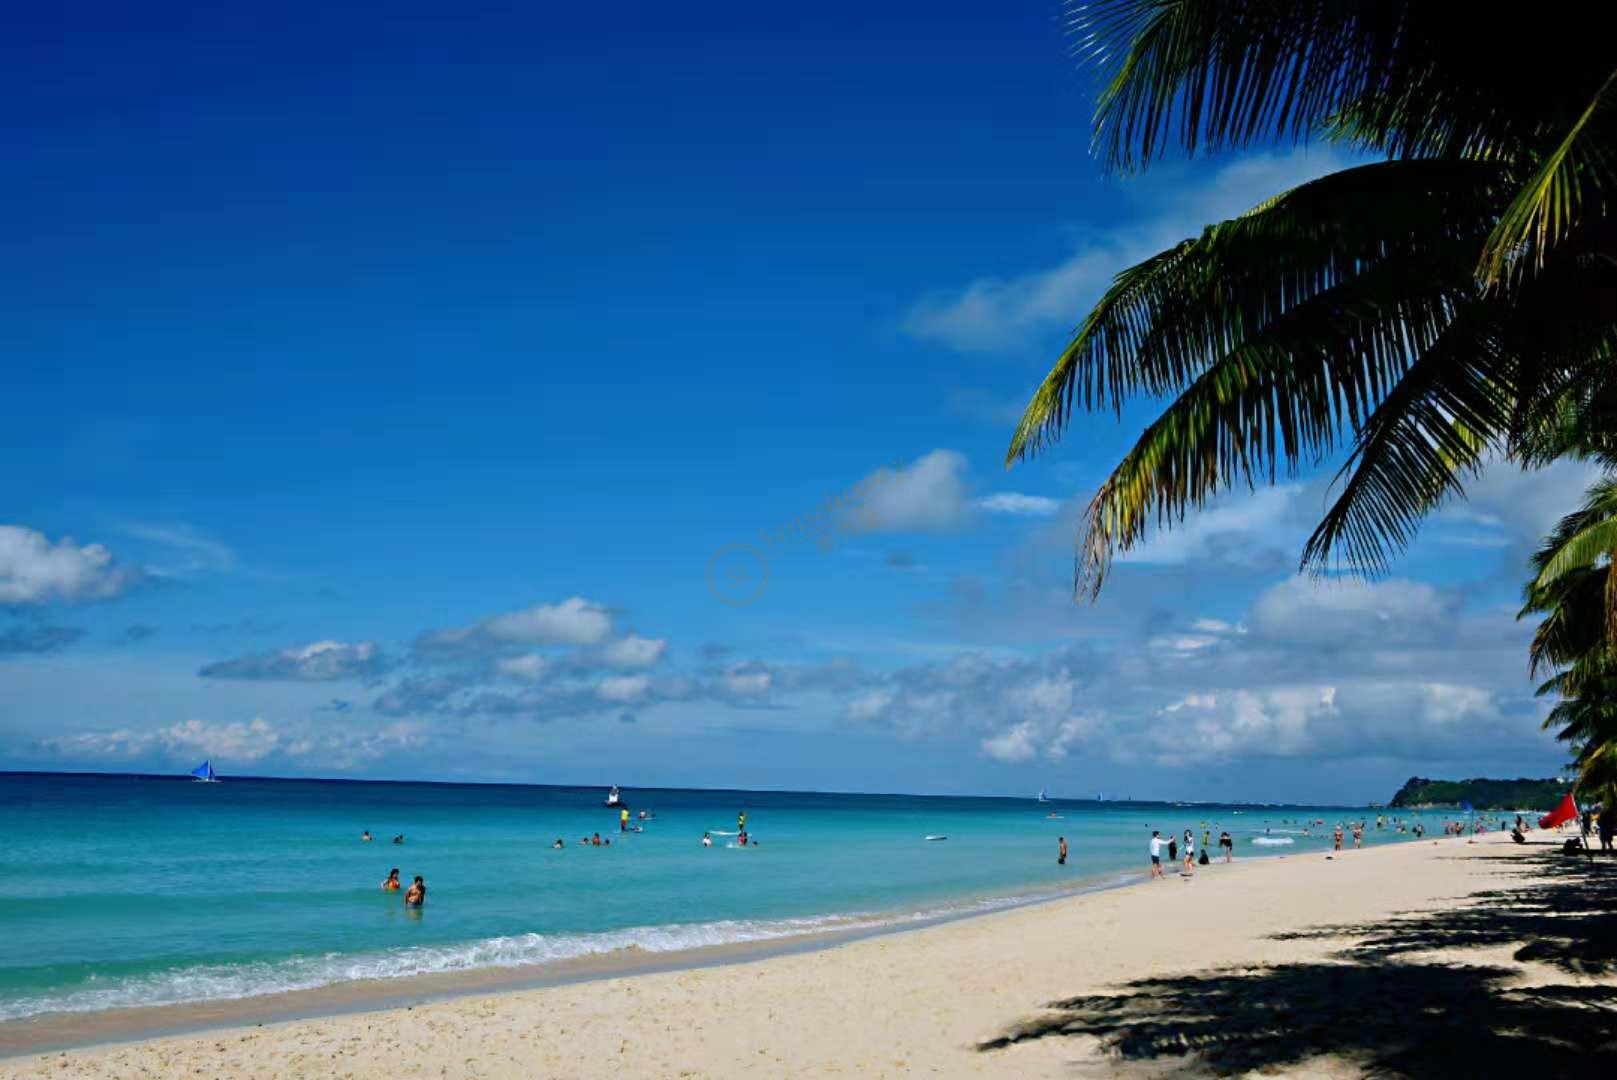 【携程攻略】长滩岛白沙滩景点,长滩岛的白沙滩非常著名。长滩岛被被评为N多个之一、第一，白沙滩功…